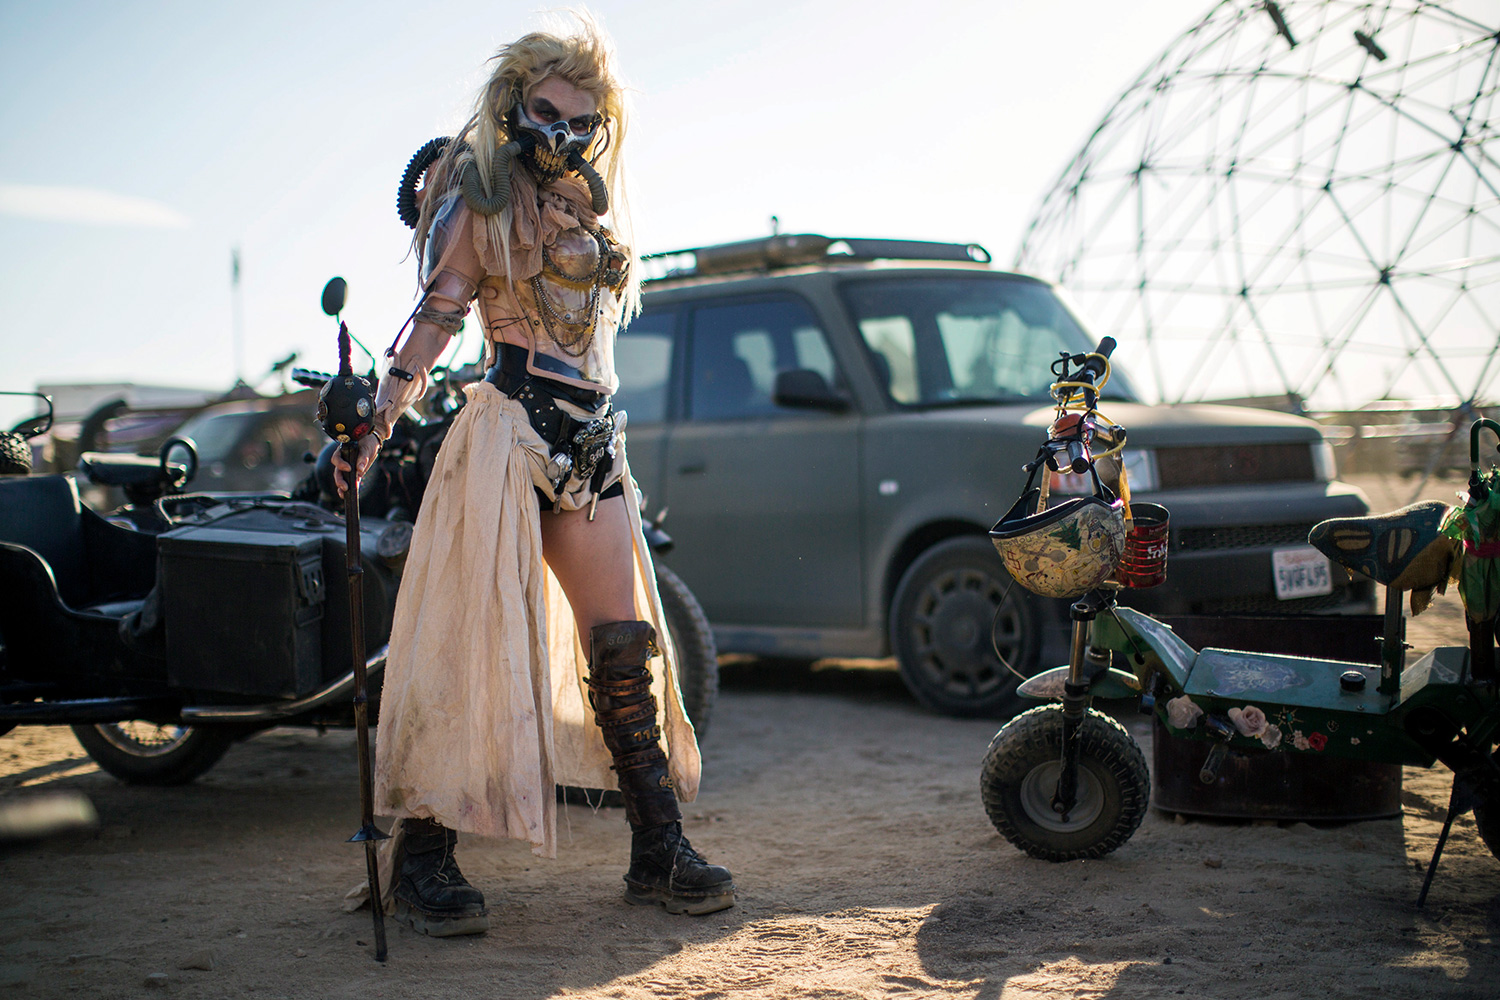 Wasteland, el festival de temática Mad Max que le hace la competencia al Burning Man